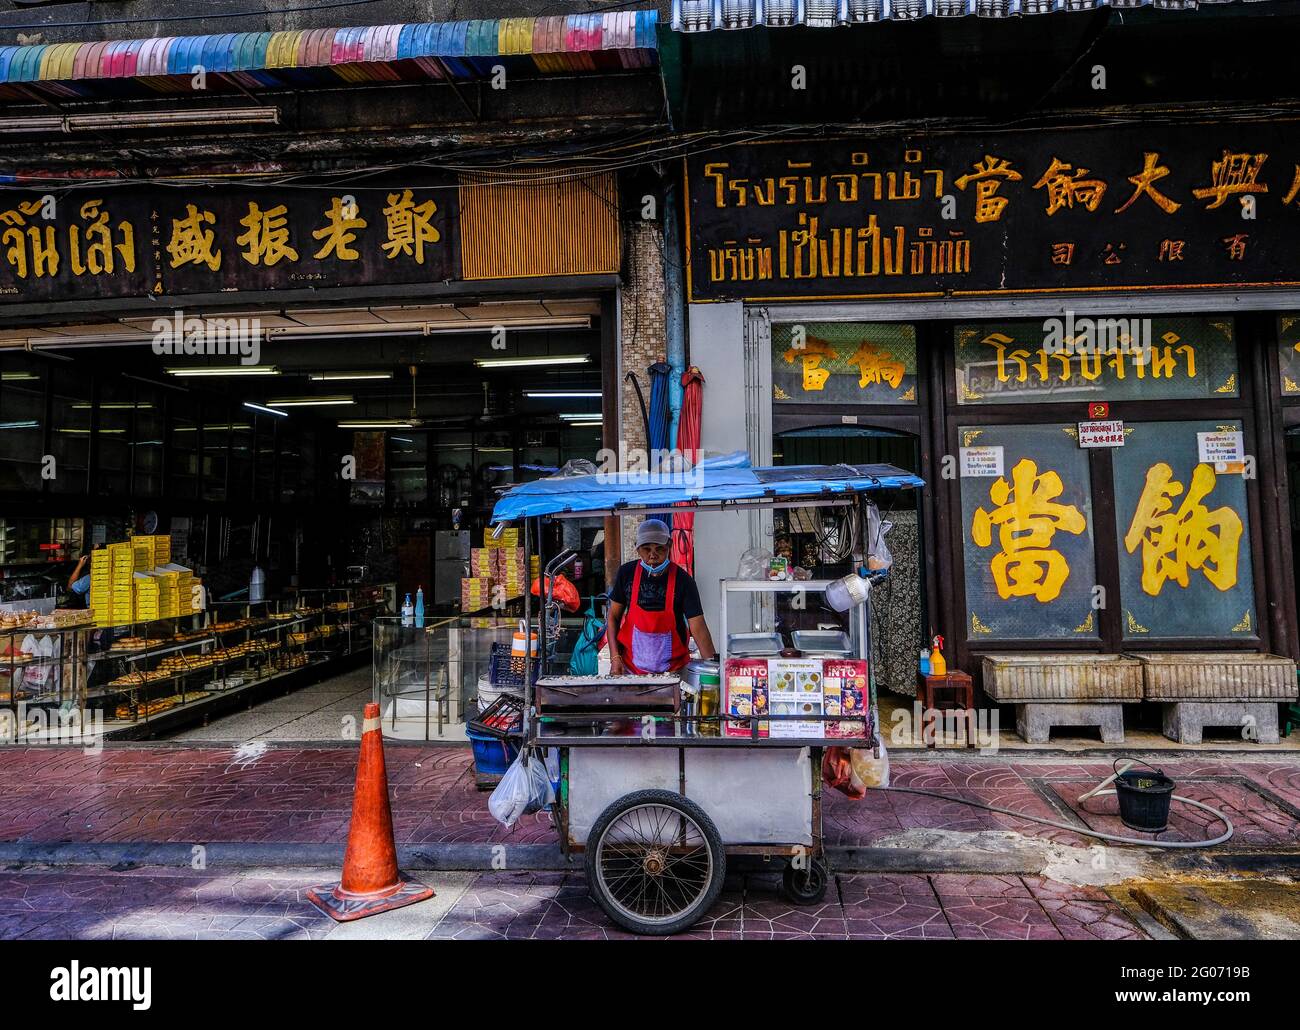 Un vendedor de comida masculina se encuentra detrás de su carro frente a algunos negocios chinos tradicionales y edificios culturales en Chinatown, Bangkok, Tailandia. Foto de stock